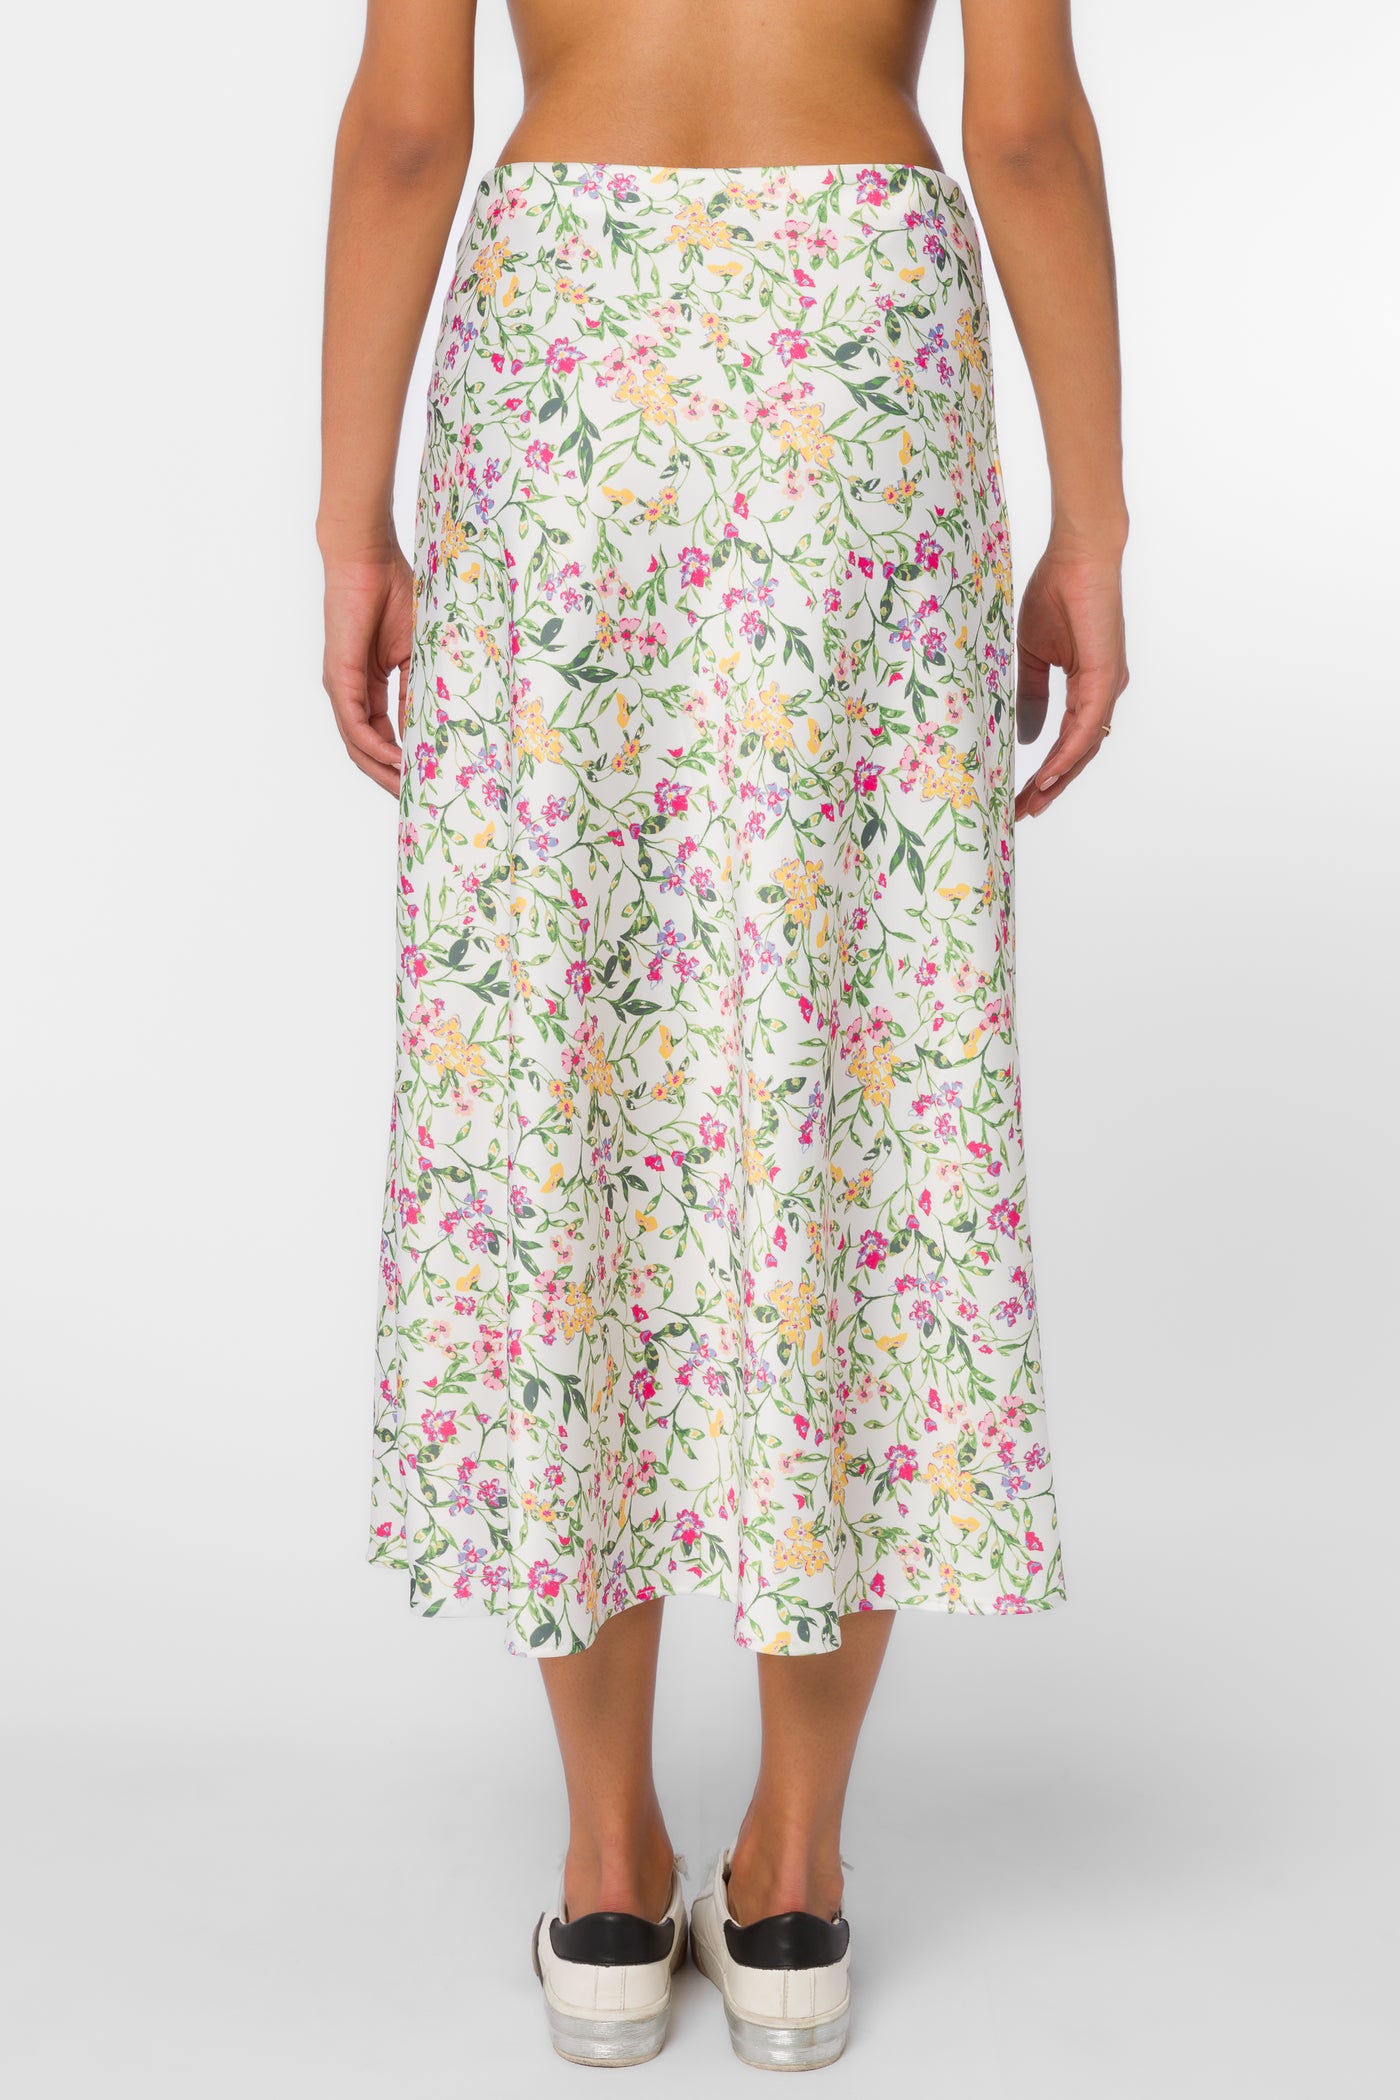 Gypsy Spring Ivy Slip Skirt - Bottoms - Velvet Heart Clothing